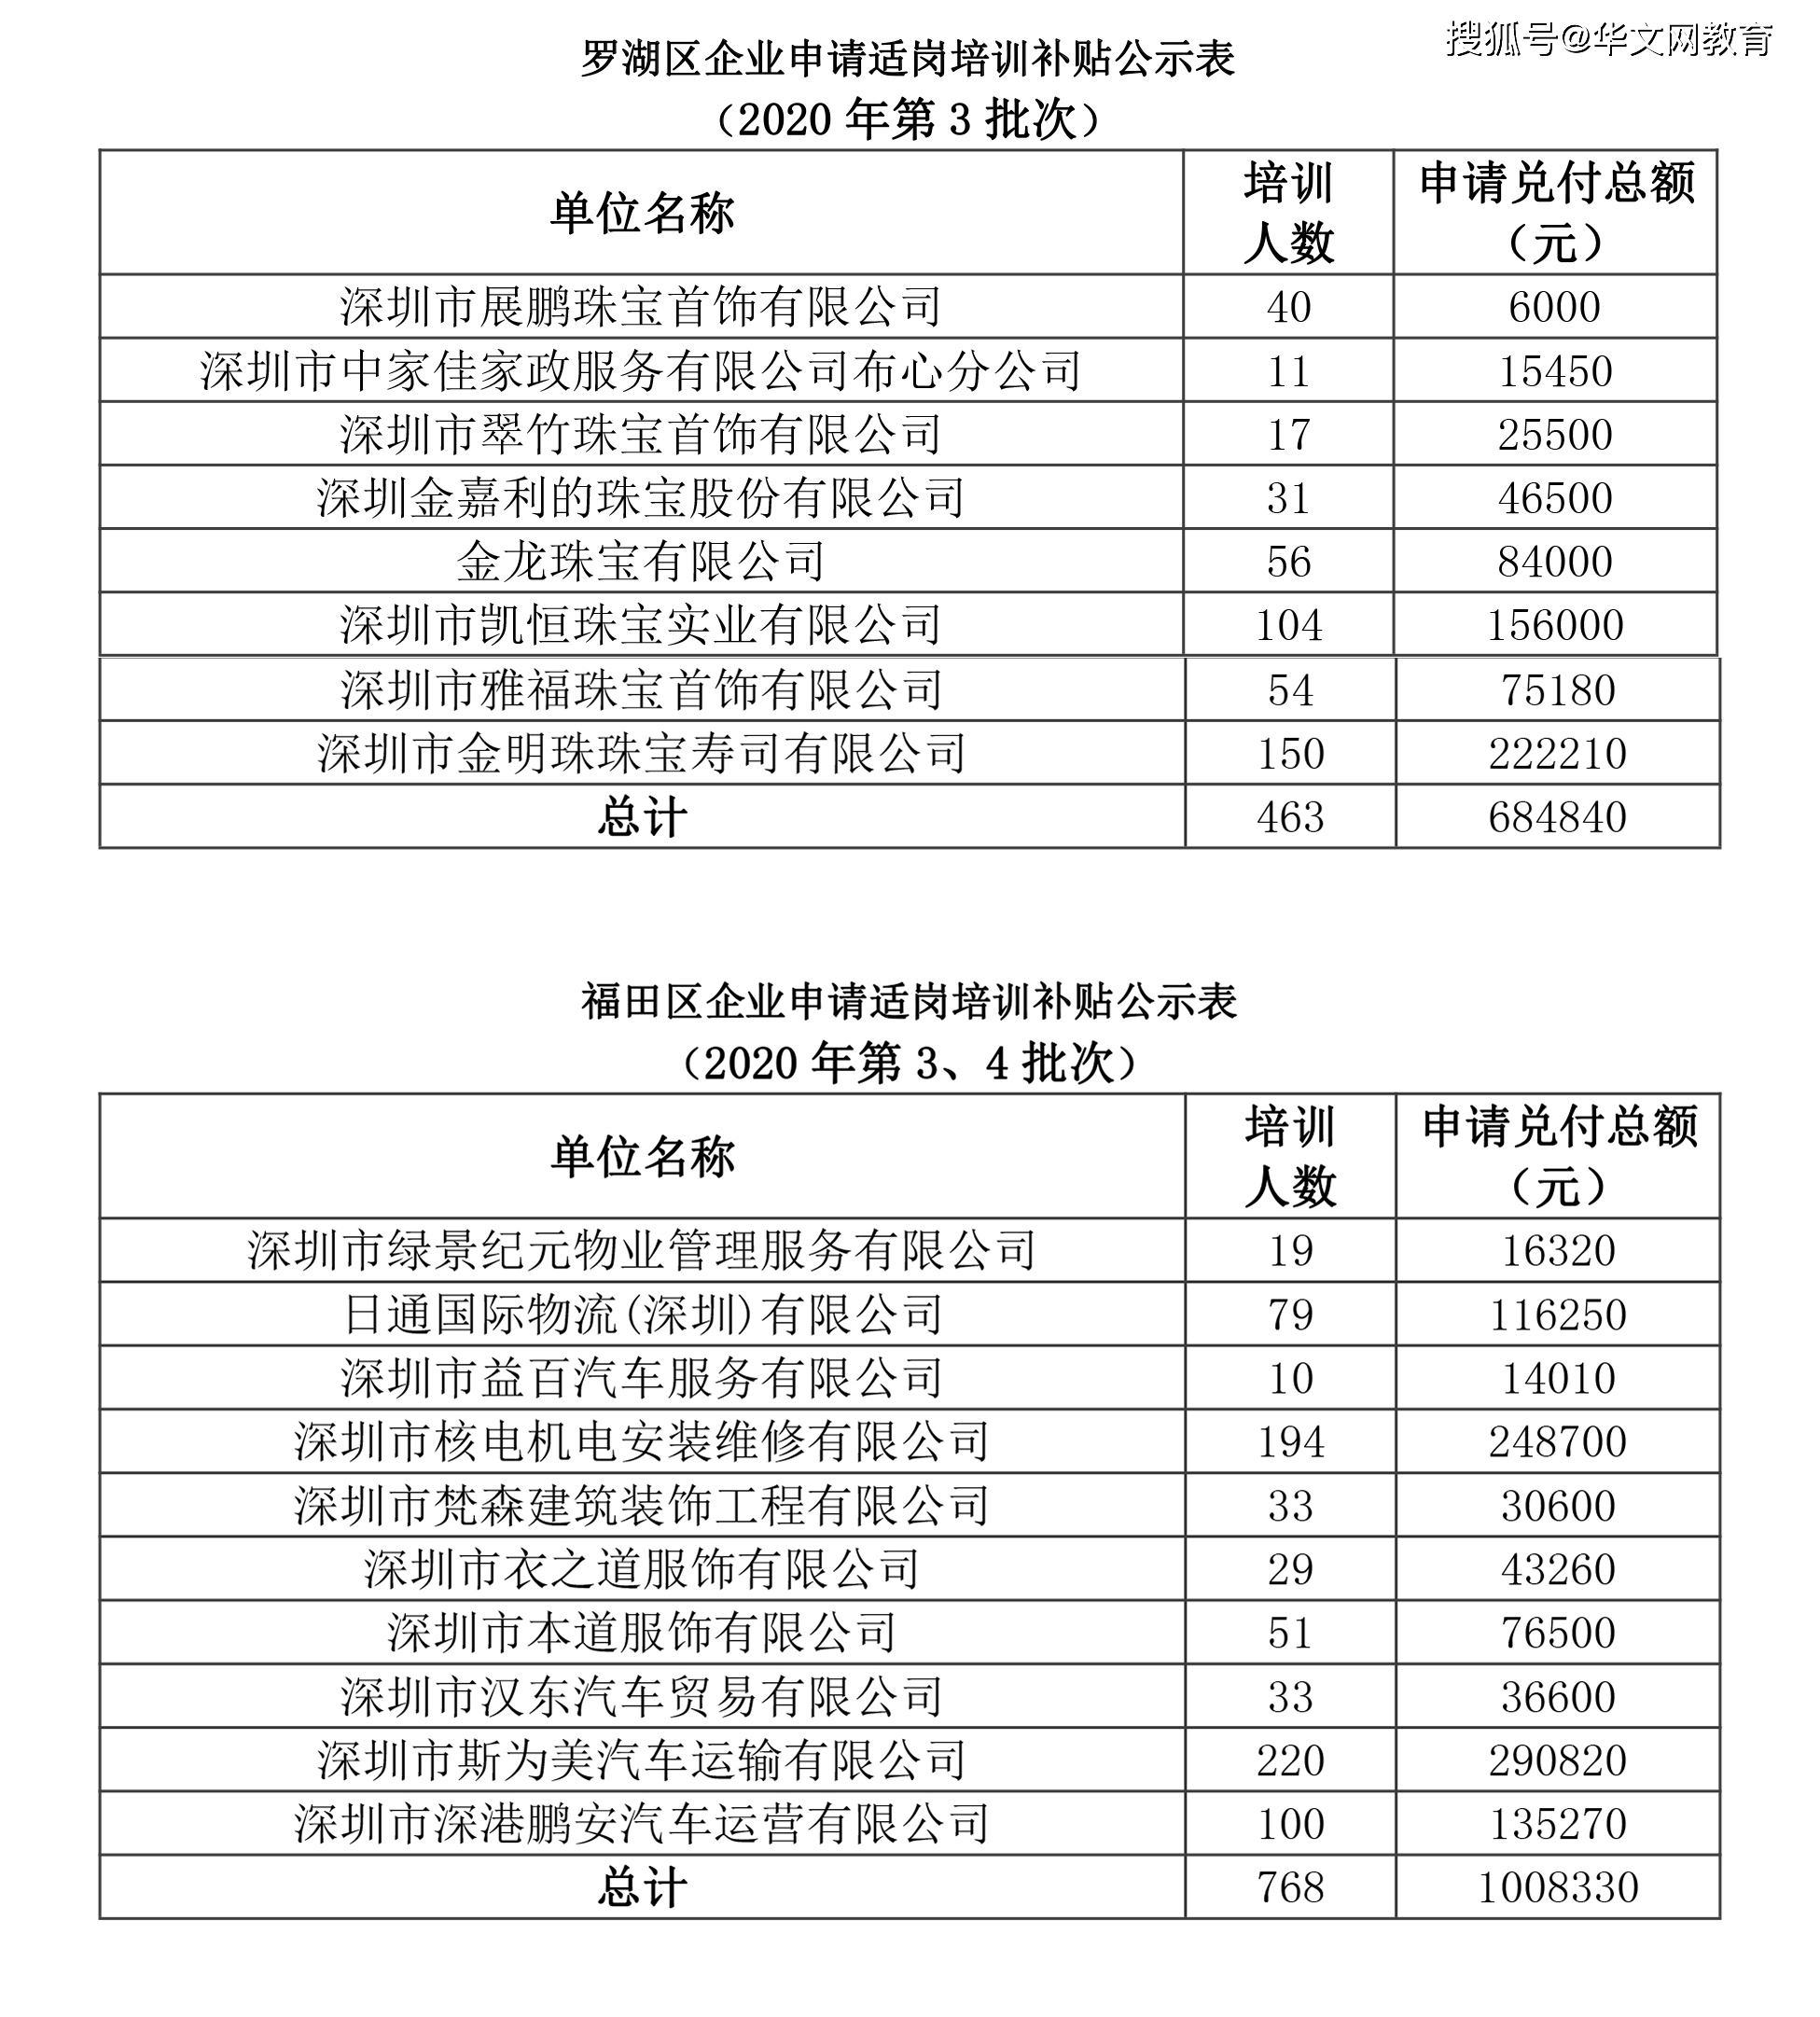 火狐娱乐线上平台-
深圳南山、罗湖、福田、龙华、灼烁适岗培训补助申请发放企业公示名单(图2)